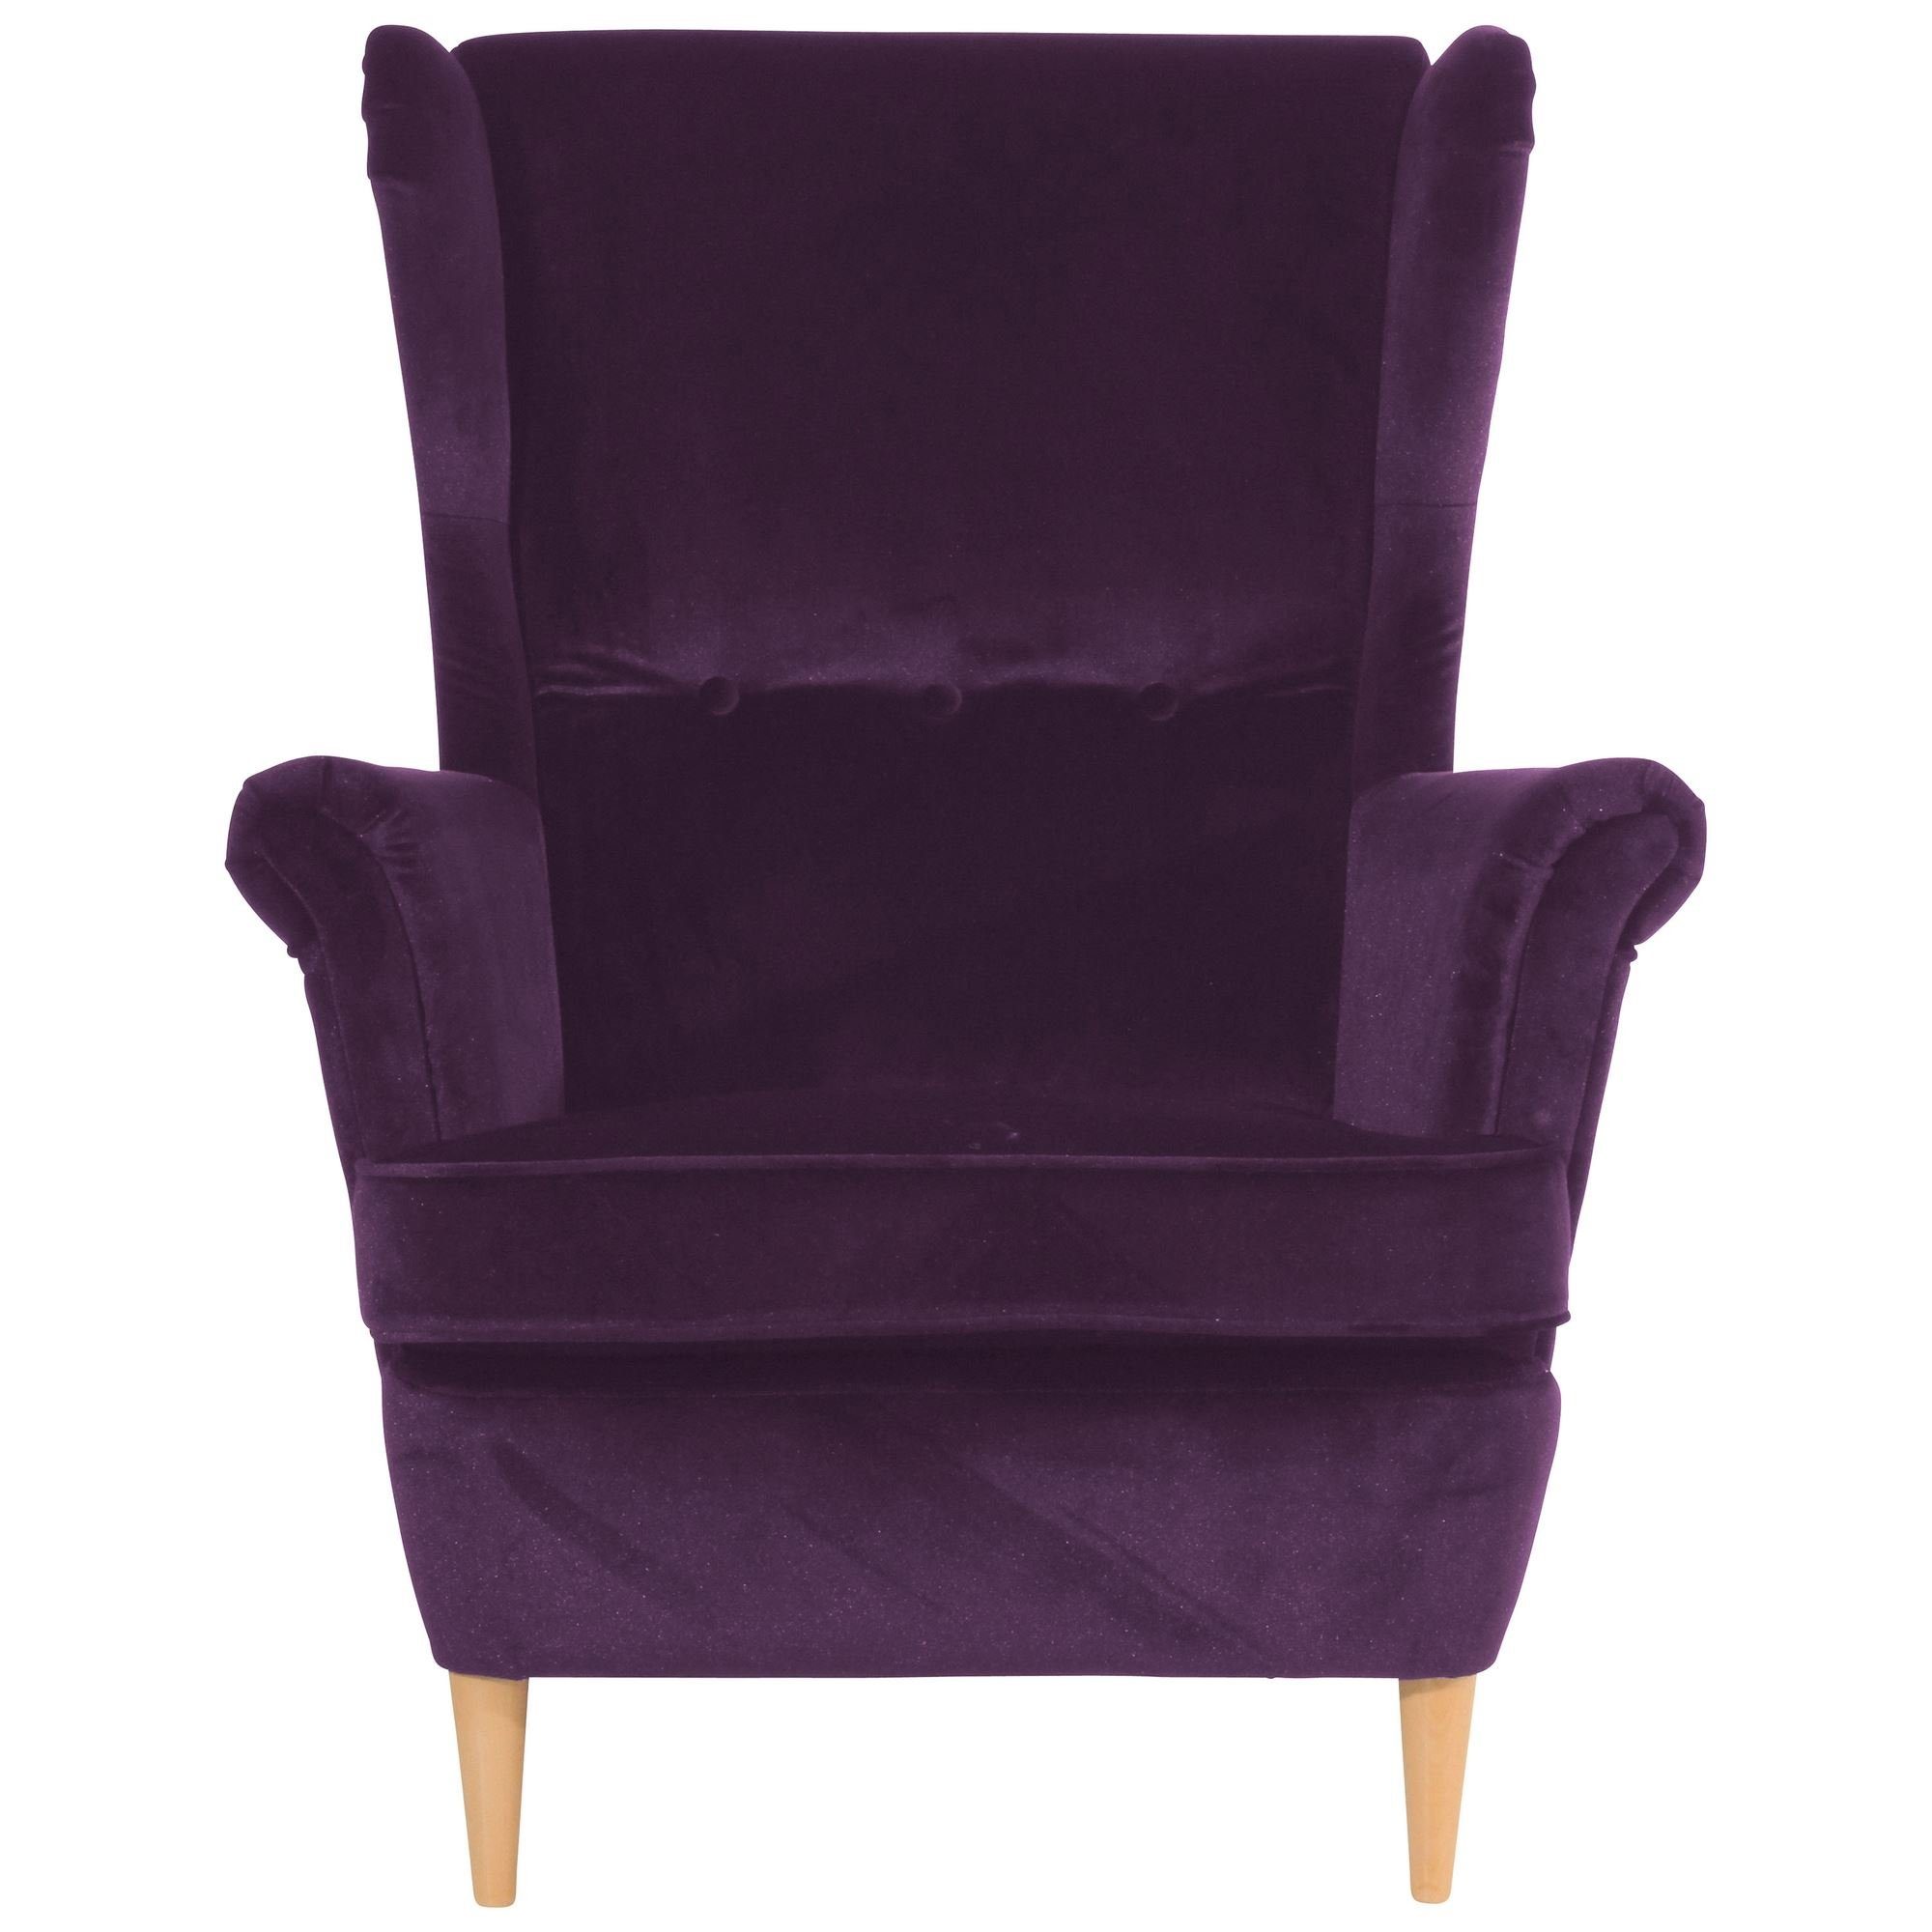 Kostenlosem / Ohrenbackensessel Sitz aufm Kallista Kessel (Sparpreis purple Sessel Samtvelours verarbeitet,bequemer natur Buche Bezug 58 inkl. Versand, hochwertig 1-St),